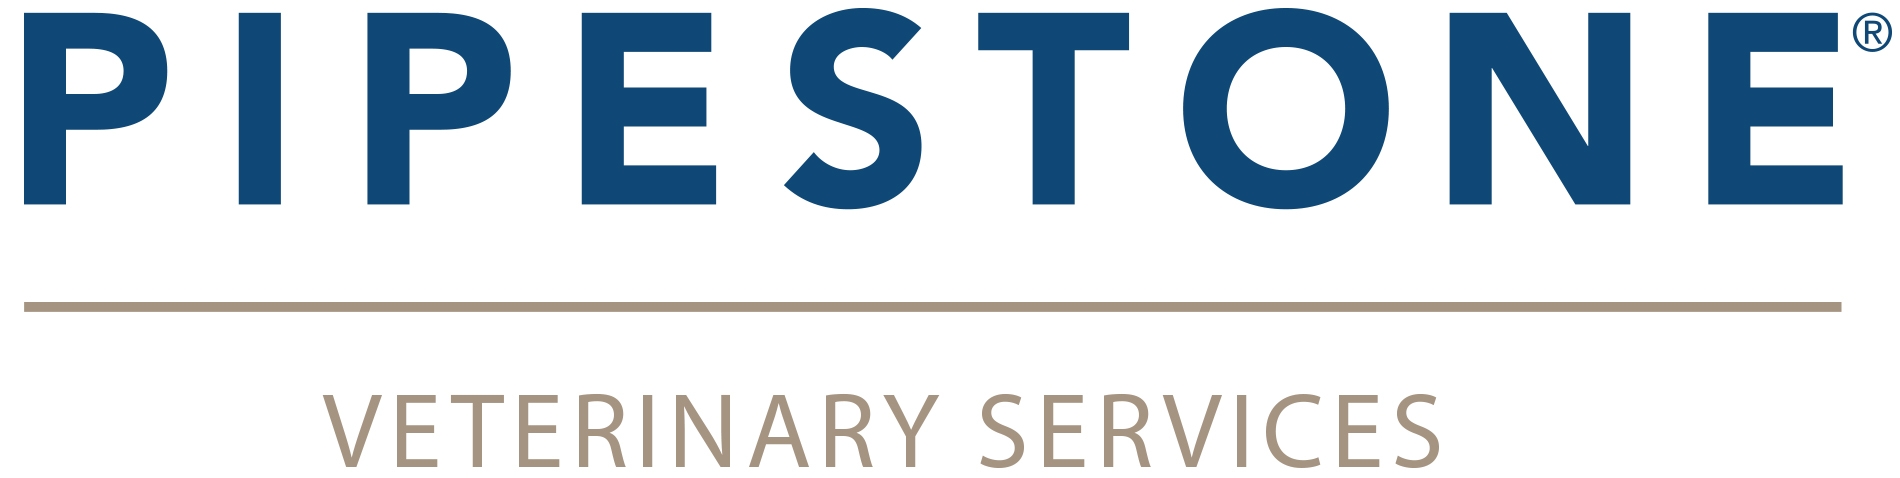 Pipestone Veterinary Services Logo - Color